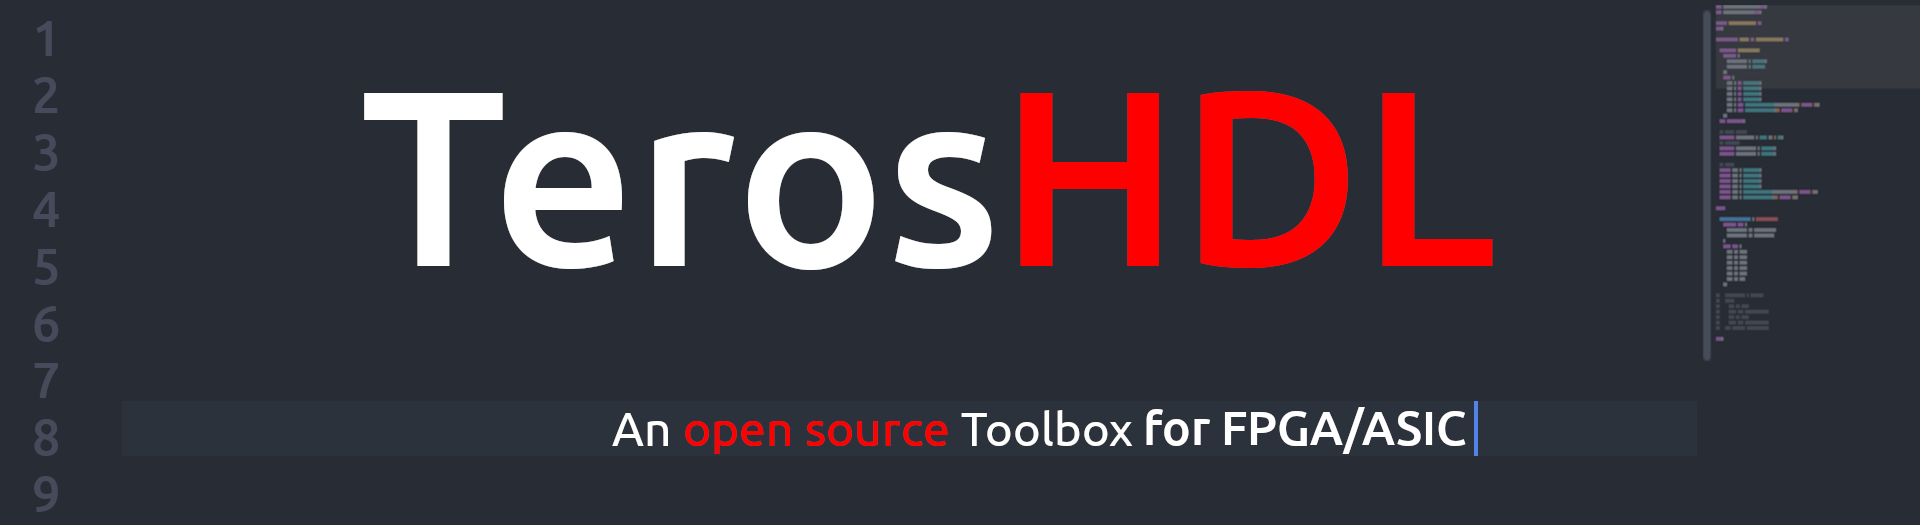 TerosHDL header